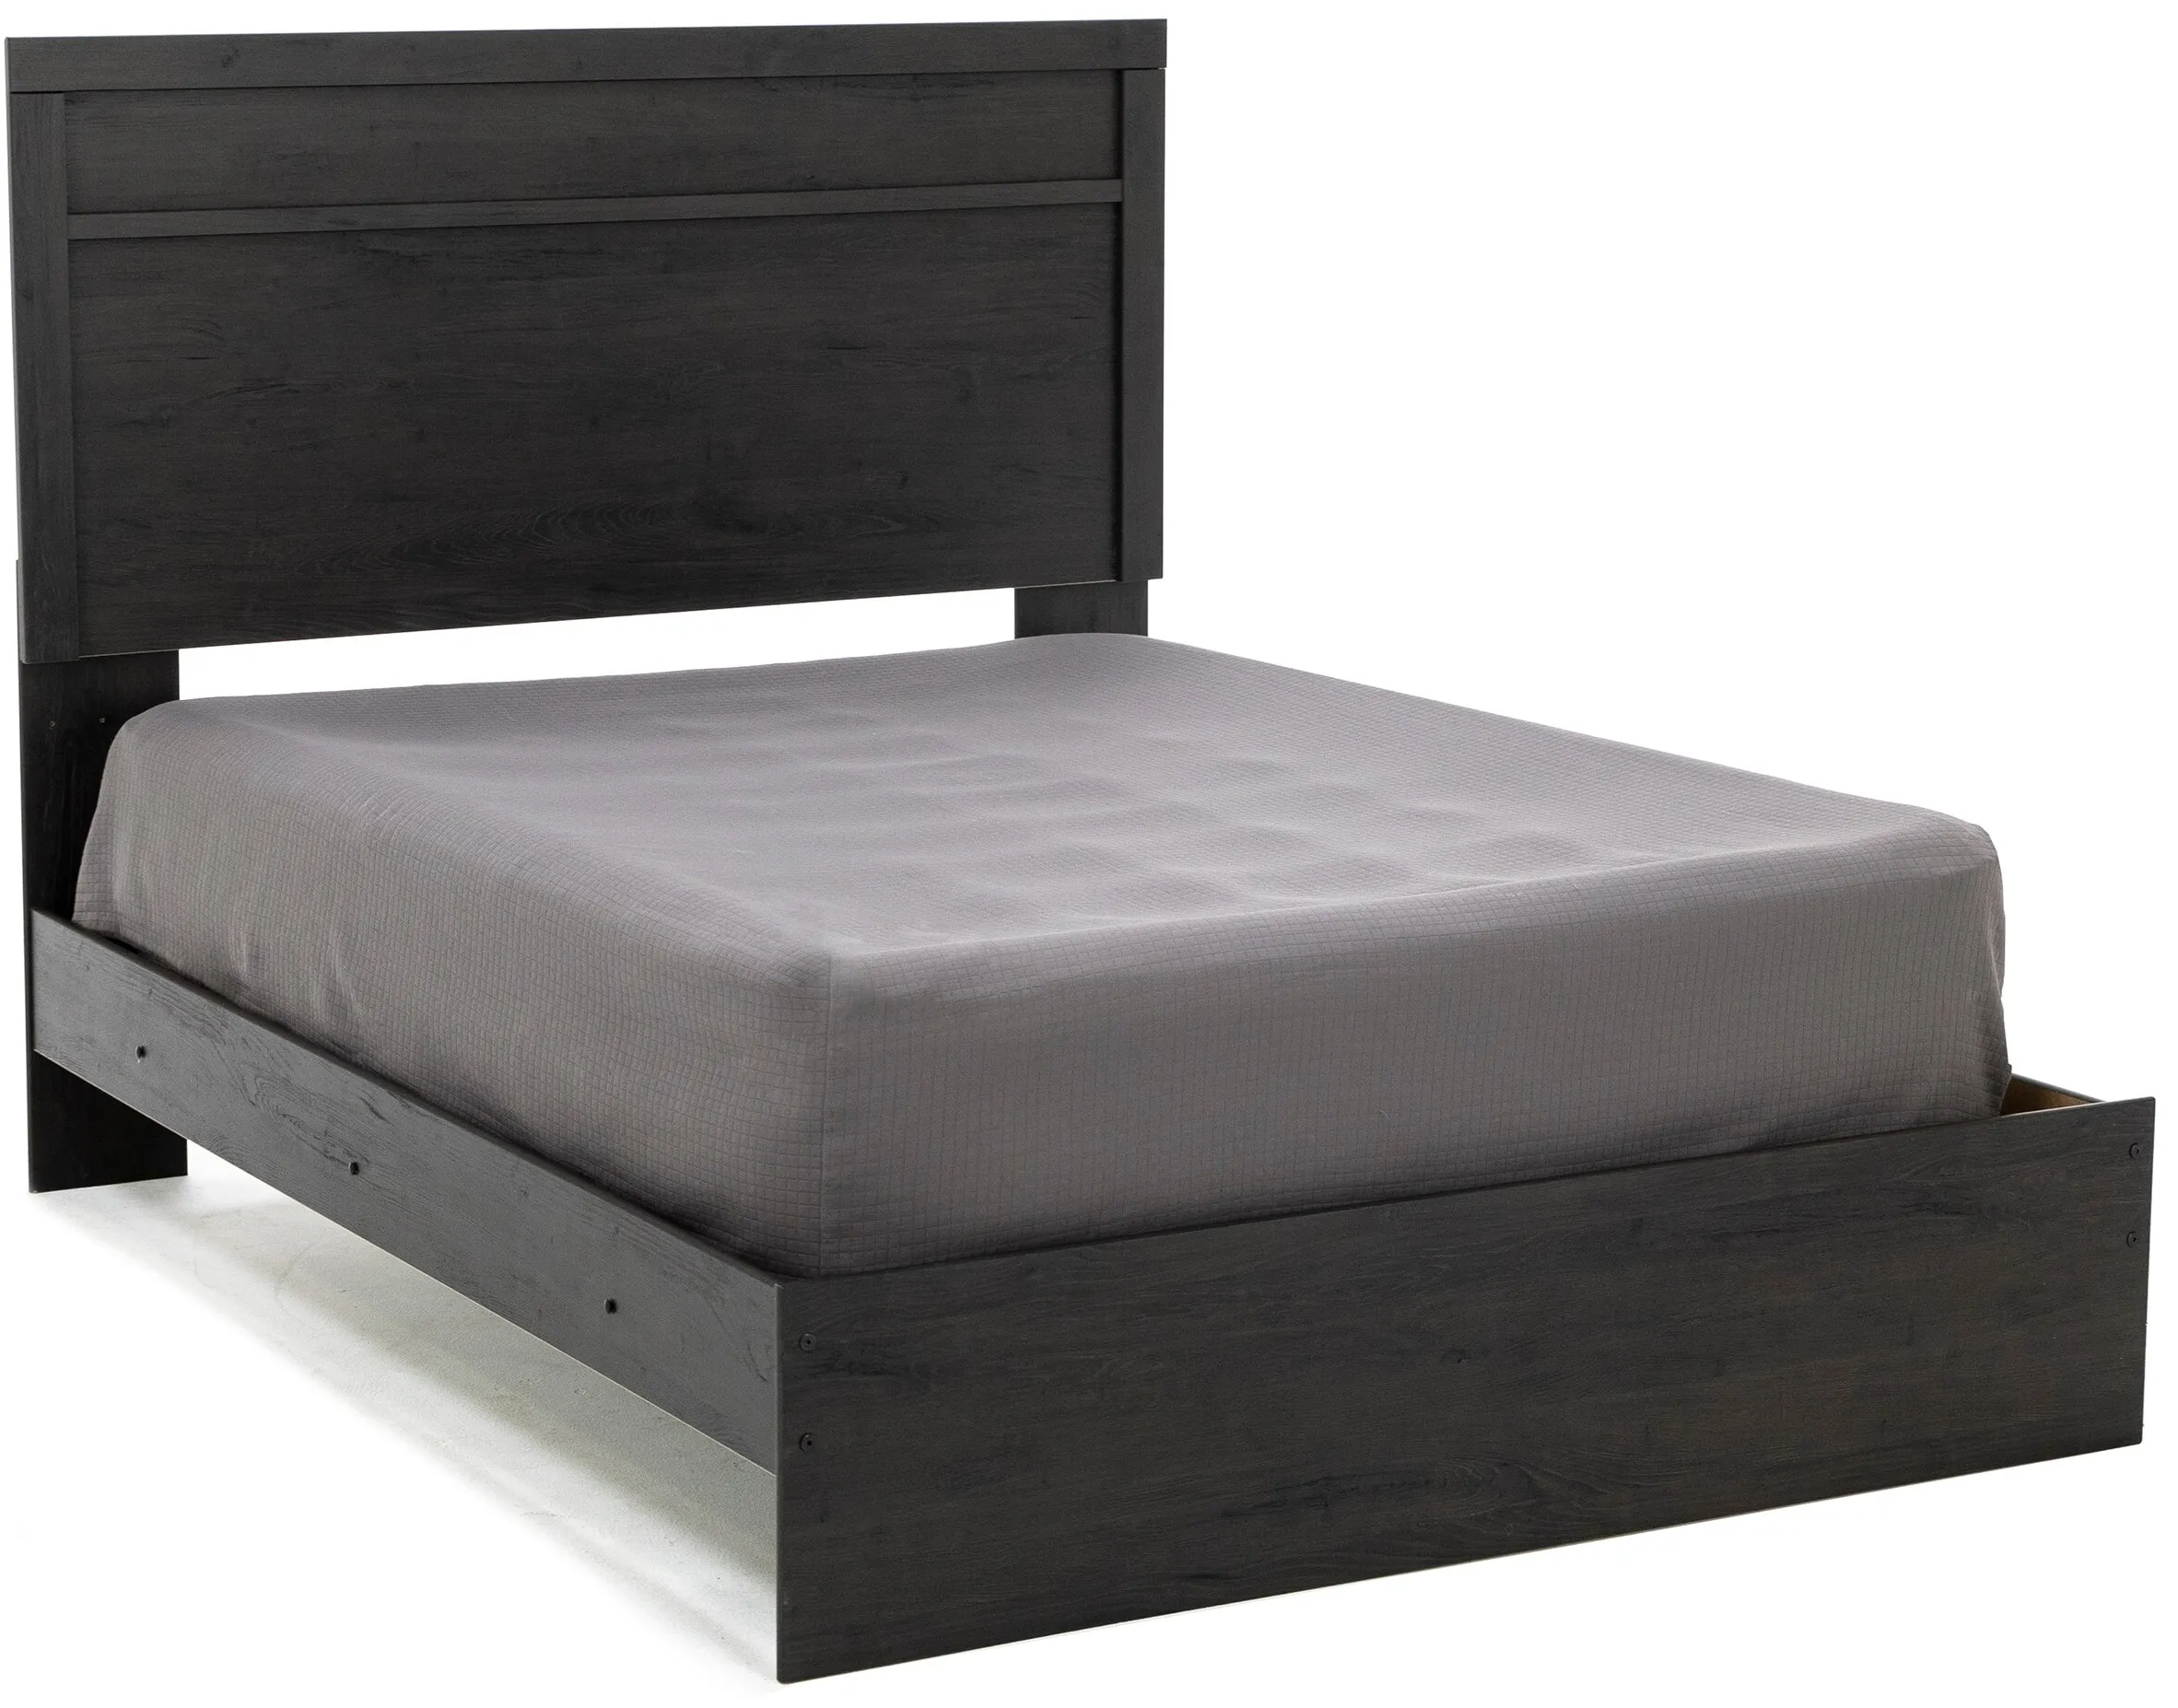 Essentials Queen Panel Bed, Charcoal